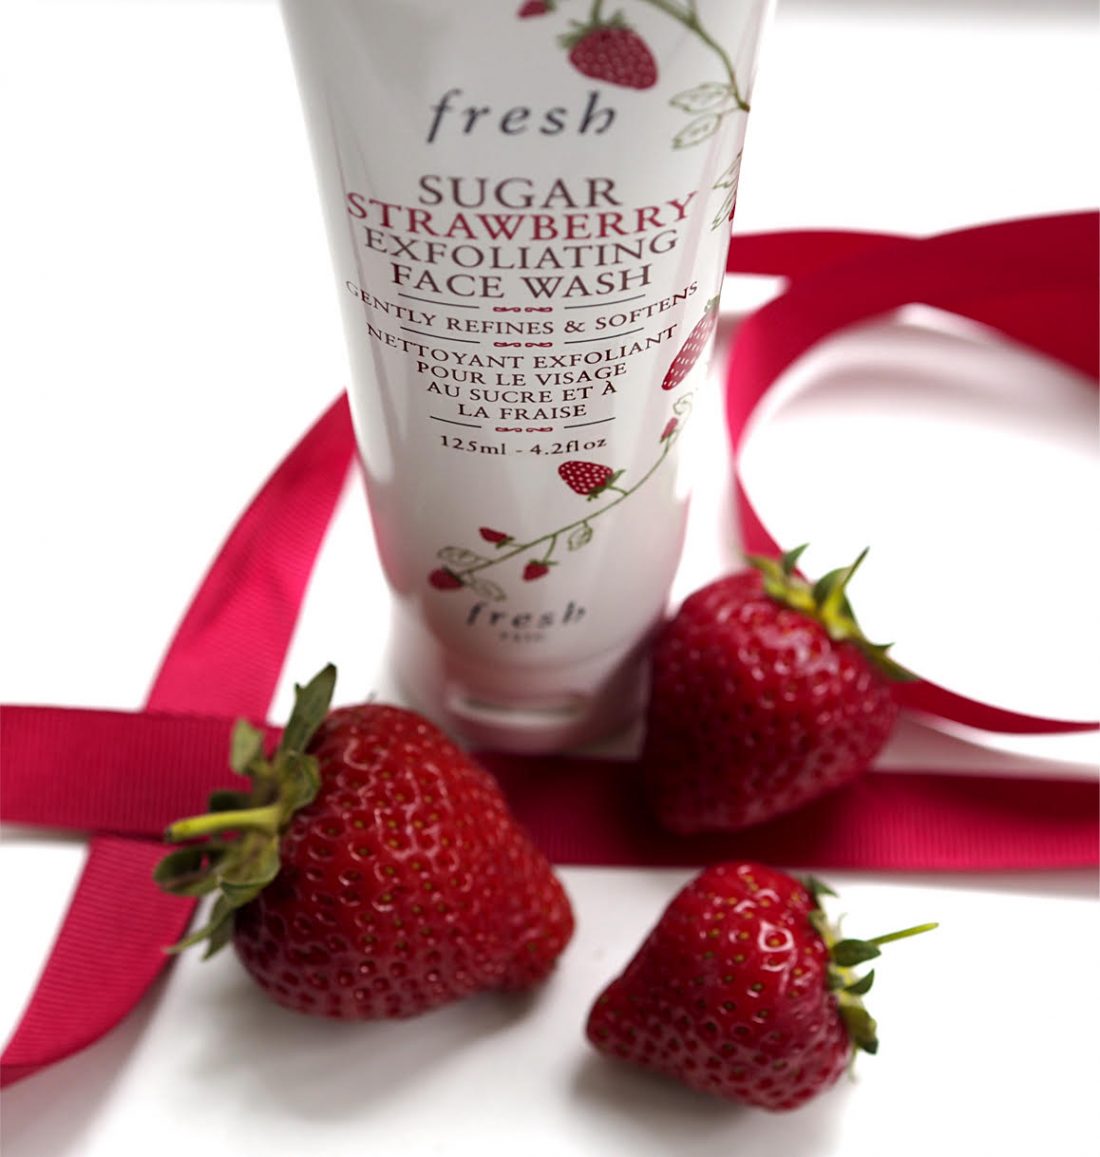 Sugar Strawberry Face Wash - Nettoyant visage à la fraise et au